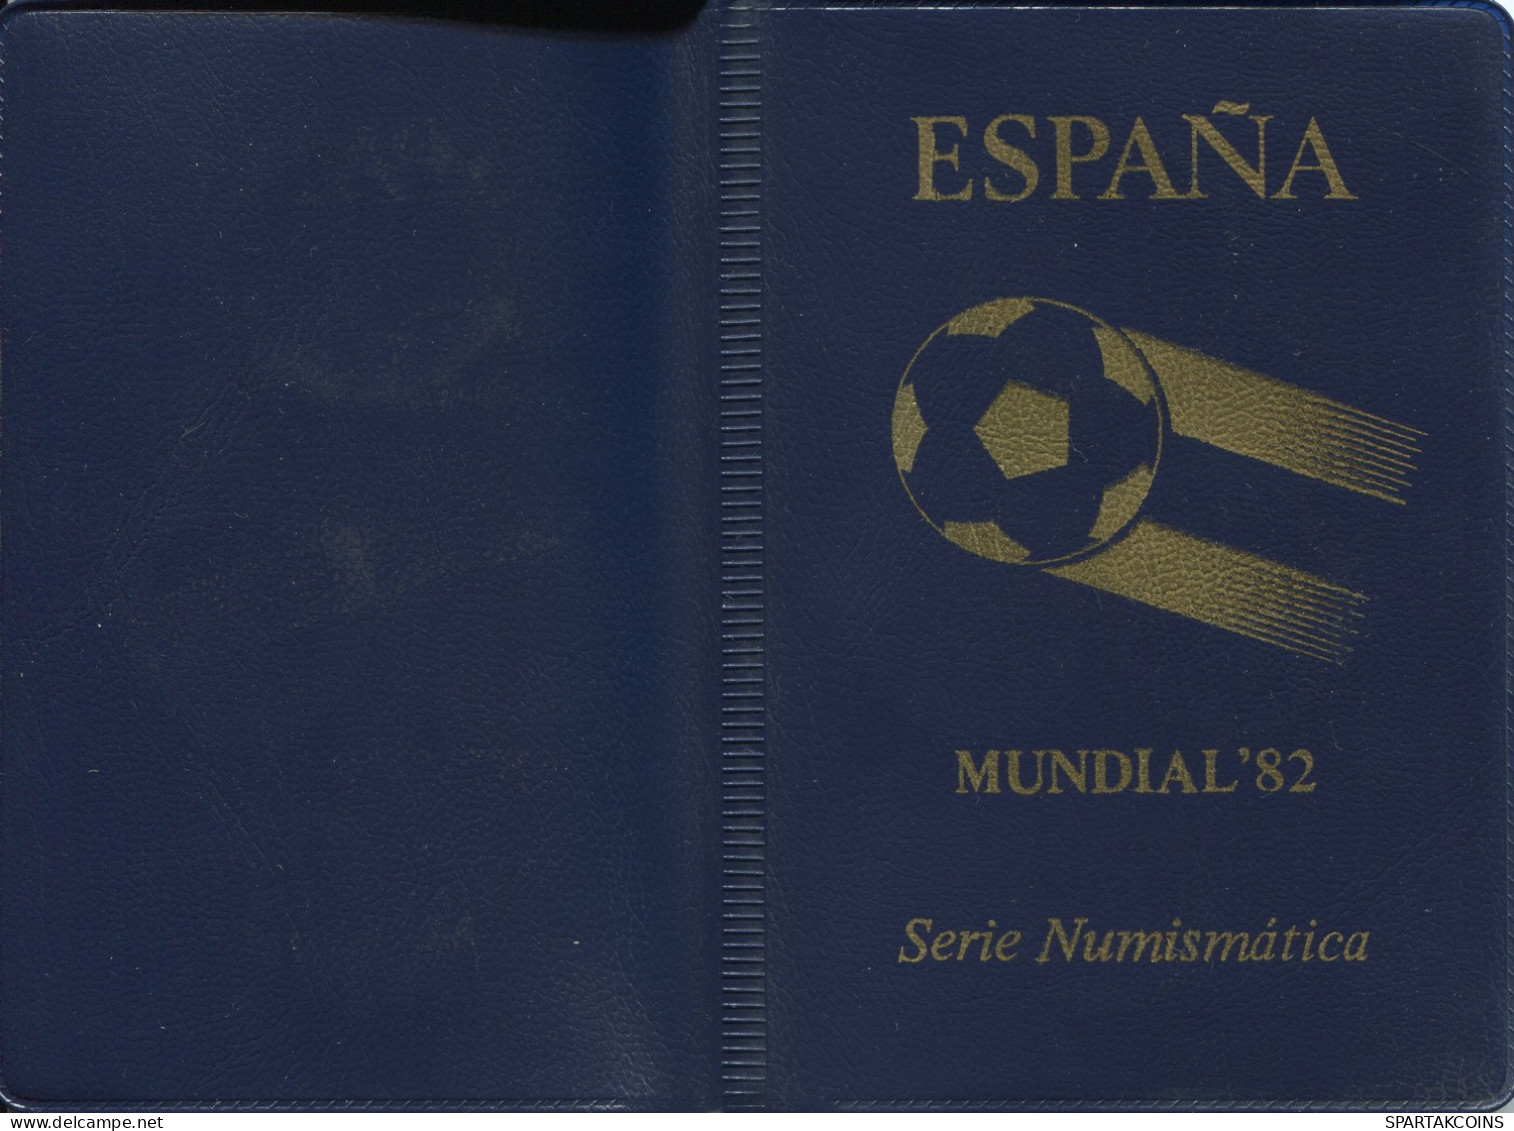 SPANIEN SPAIN 1981*81 Münze SET MUNDIAL*82 UNC #SET1259.4.D - Mint Sets & Proof Sets